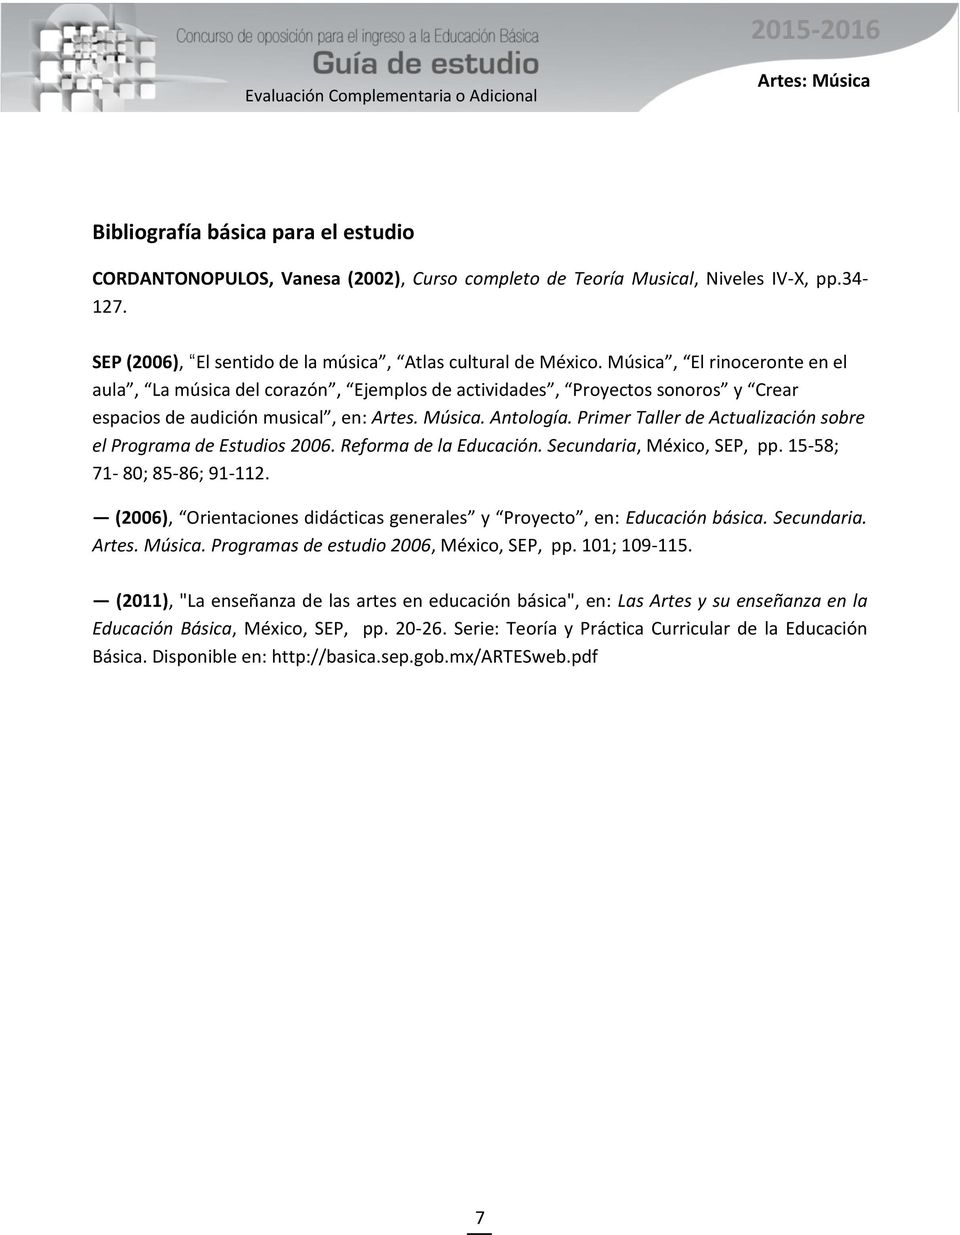 Primer Taller de Actualización sobre el Programa de Estudios 2006. Reforma de la Educación. Secundaria, México, SEP, pp. 15-58; 71-80; 85-86; 91-112.